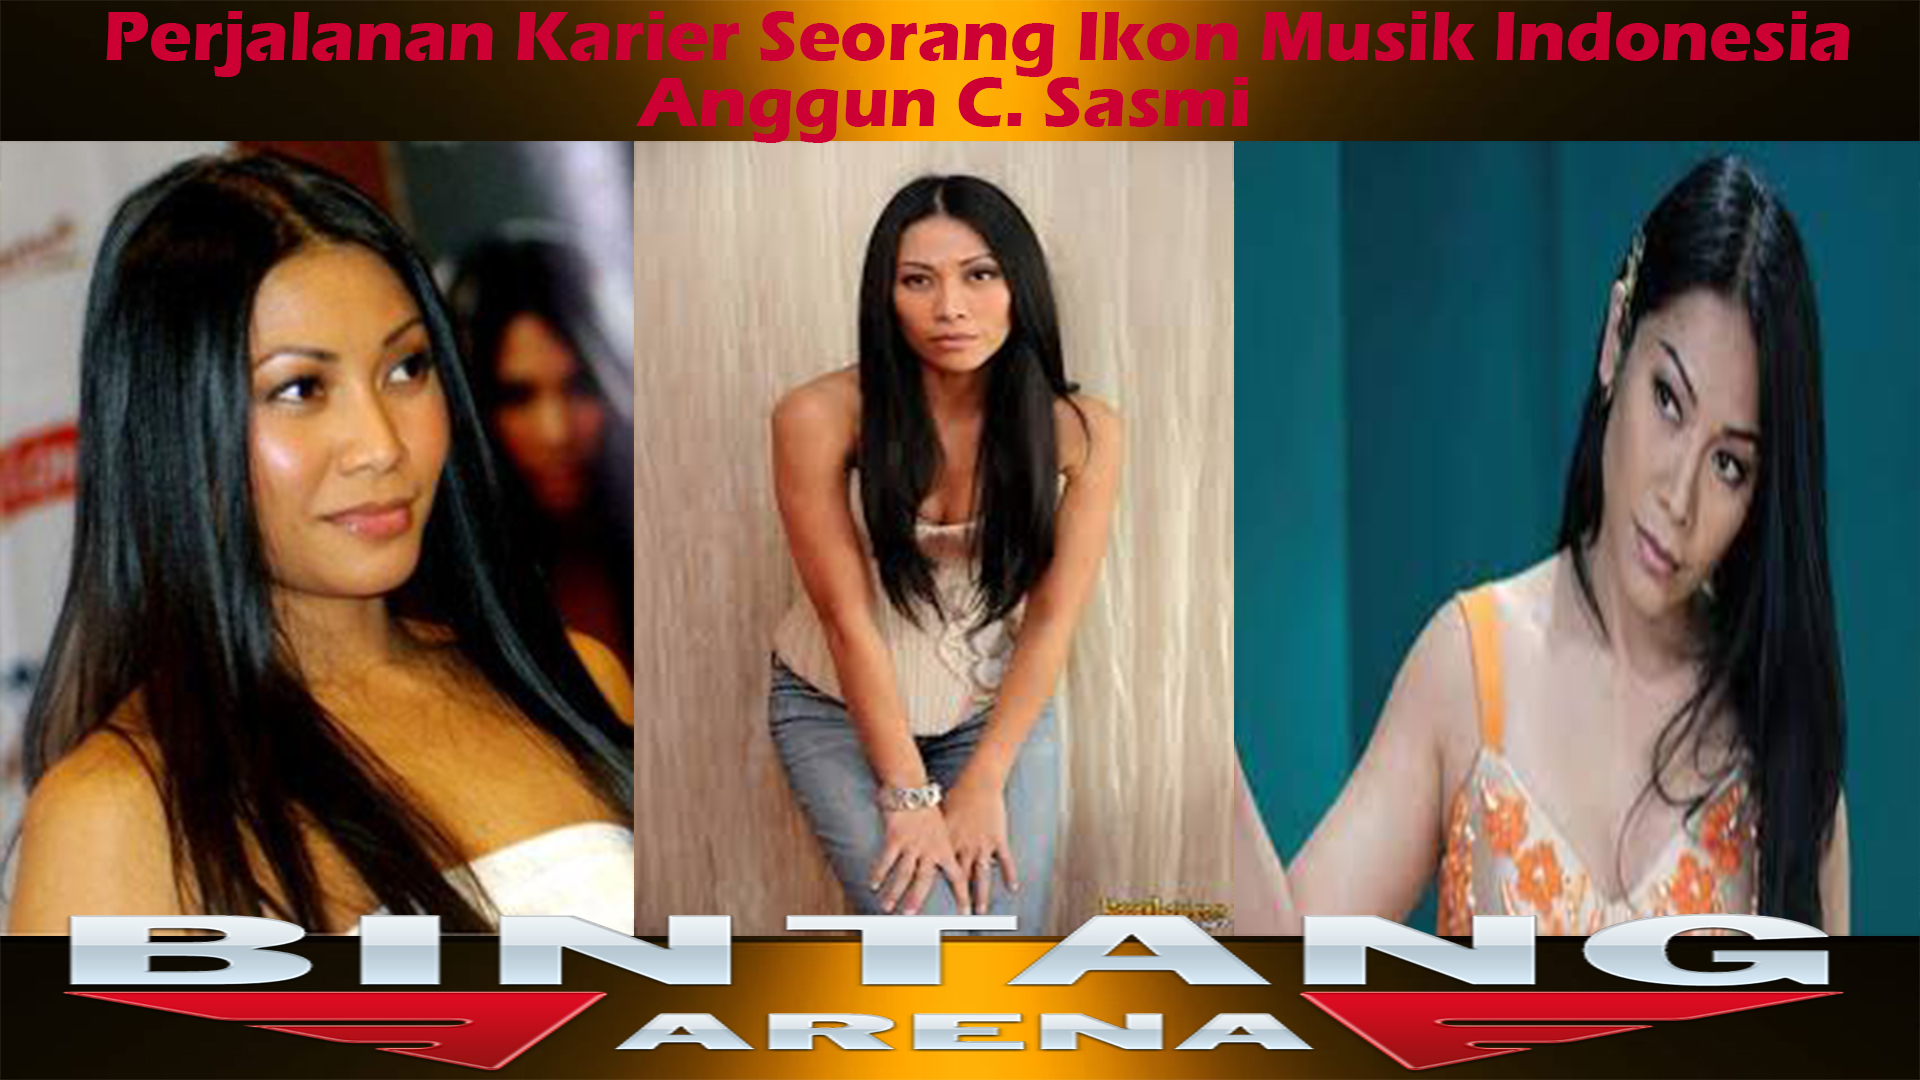 Anggun C. Sasmi: Perjalanan Karier Seorang Ikon Musik Indonesia